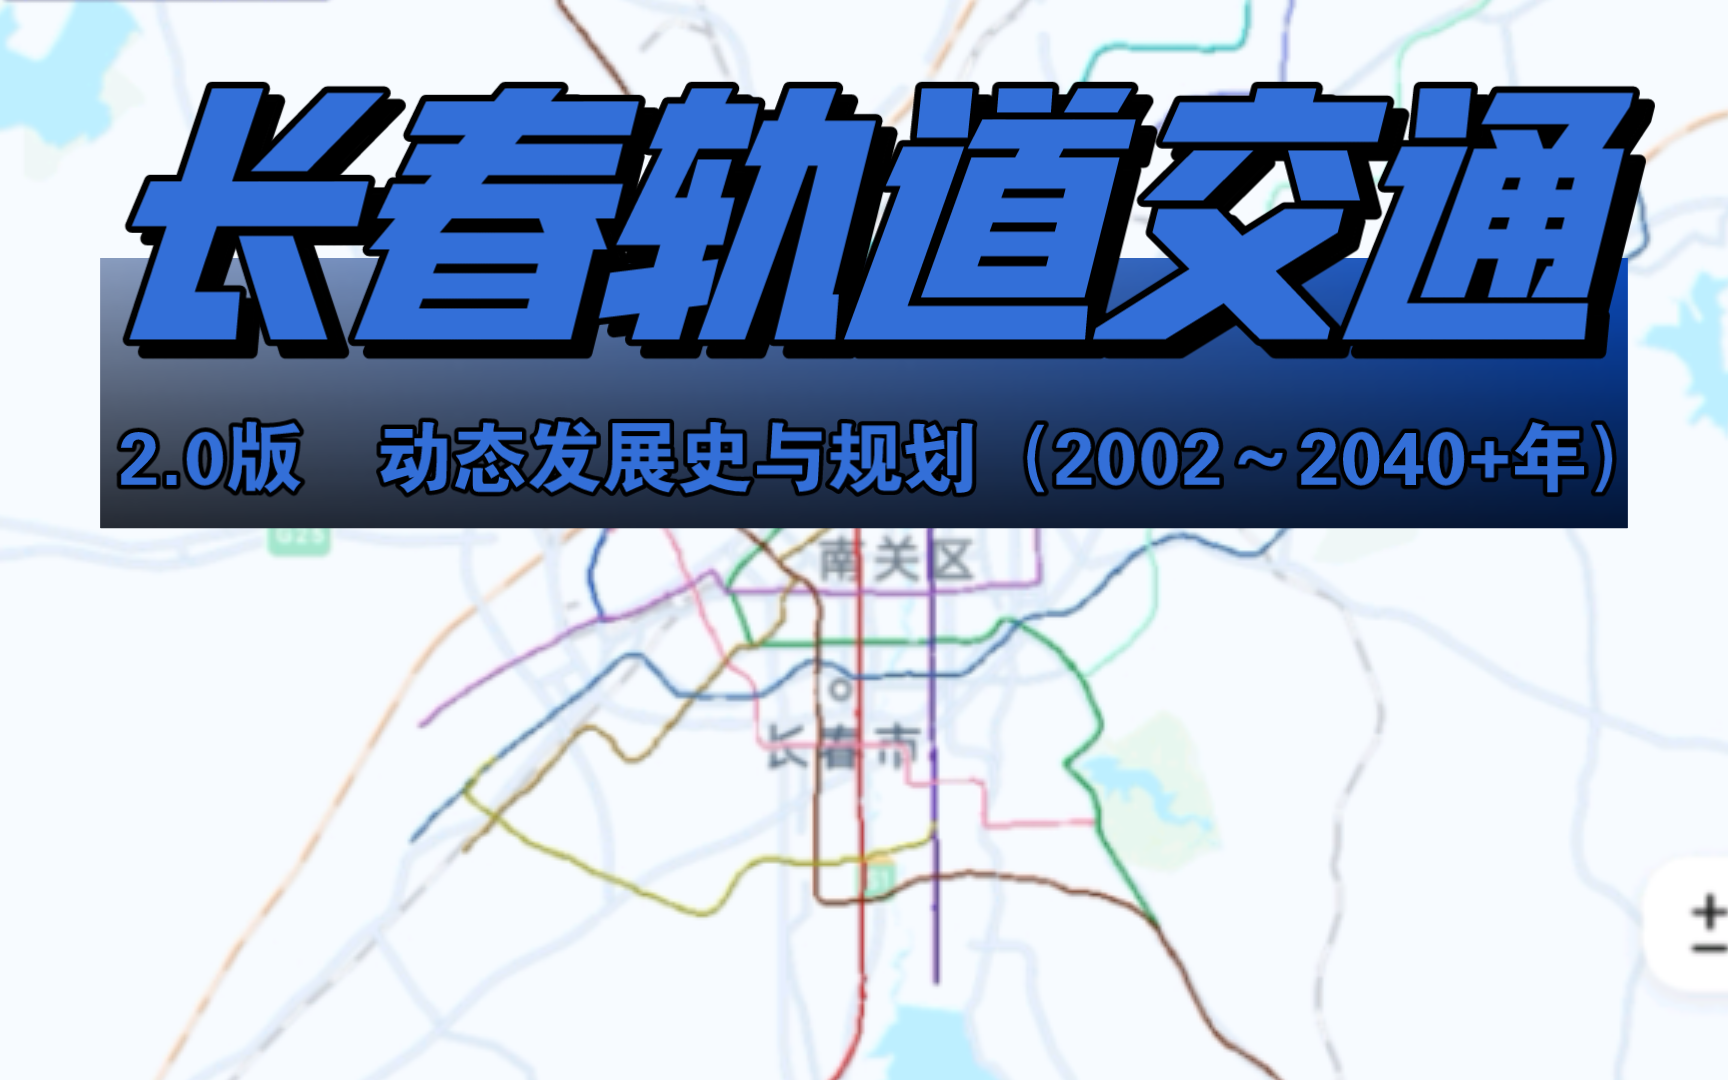 【长春轨道20版】【长春轨道交通】动态发展史与规划(2002～2040 年)